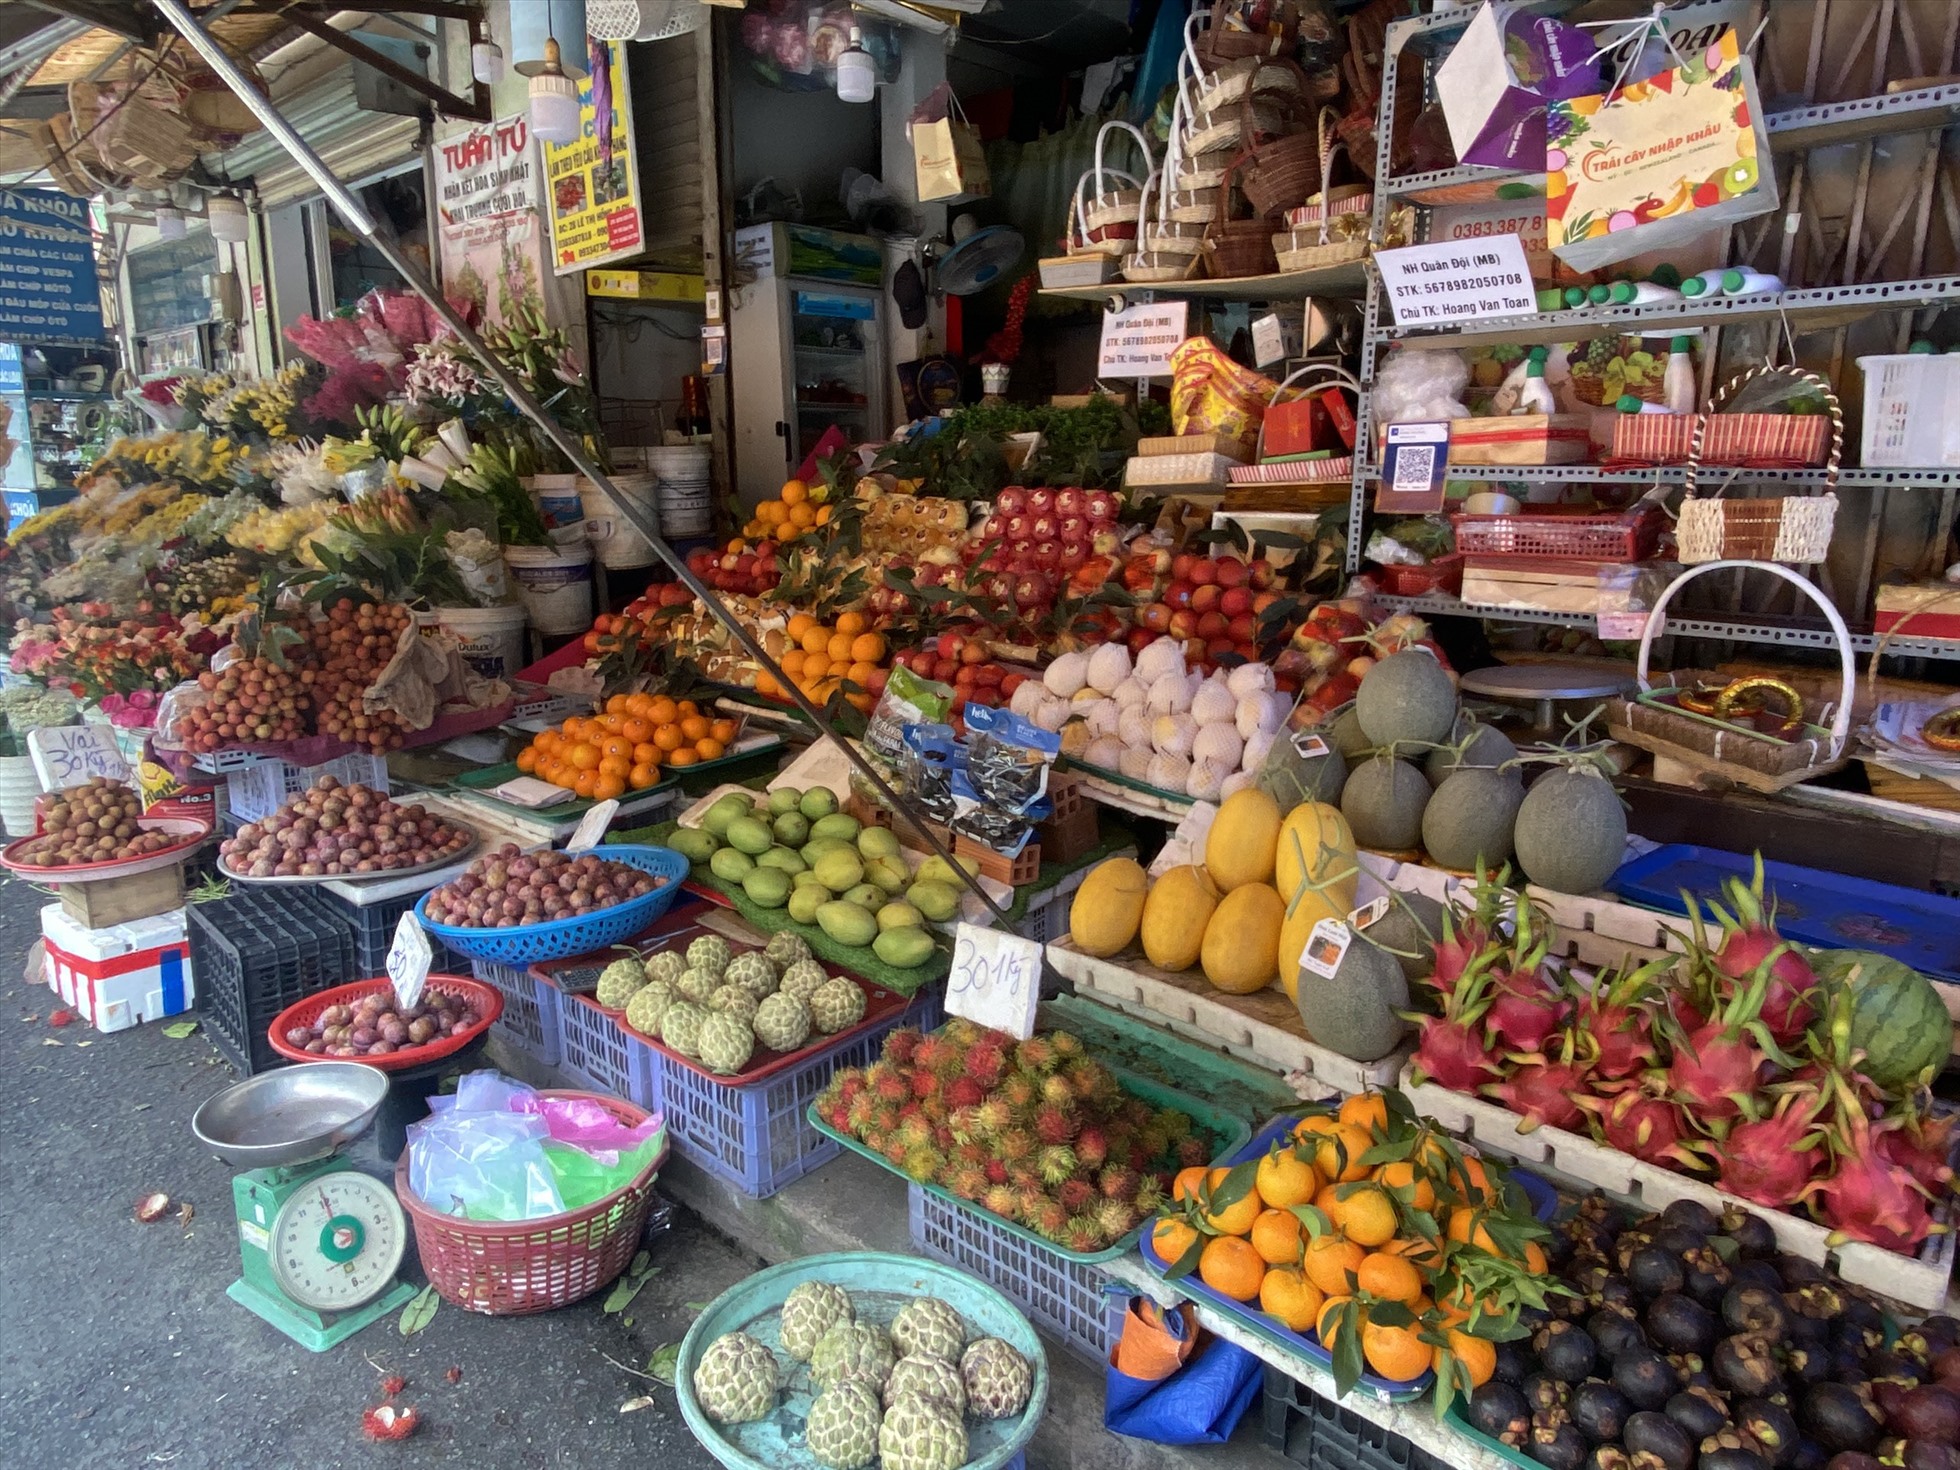 Tiệm trái cây Tuấn Tú của chị Hương vắng khách mua hàng, 1 ngày sản lượng bán ra chỉ khoảng 18 - 20 kg